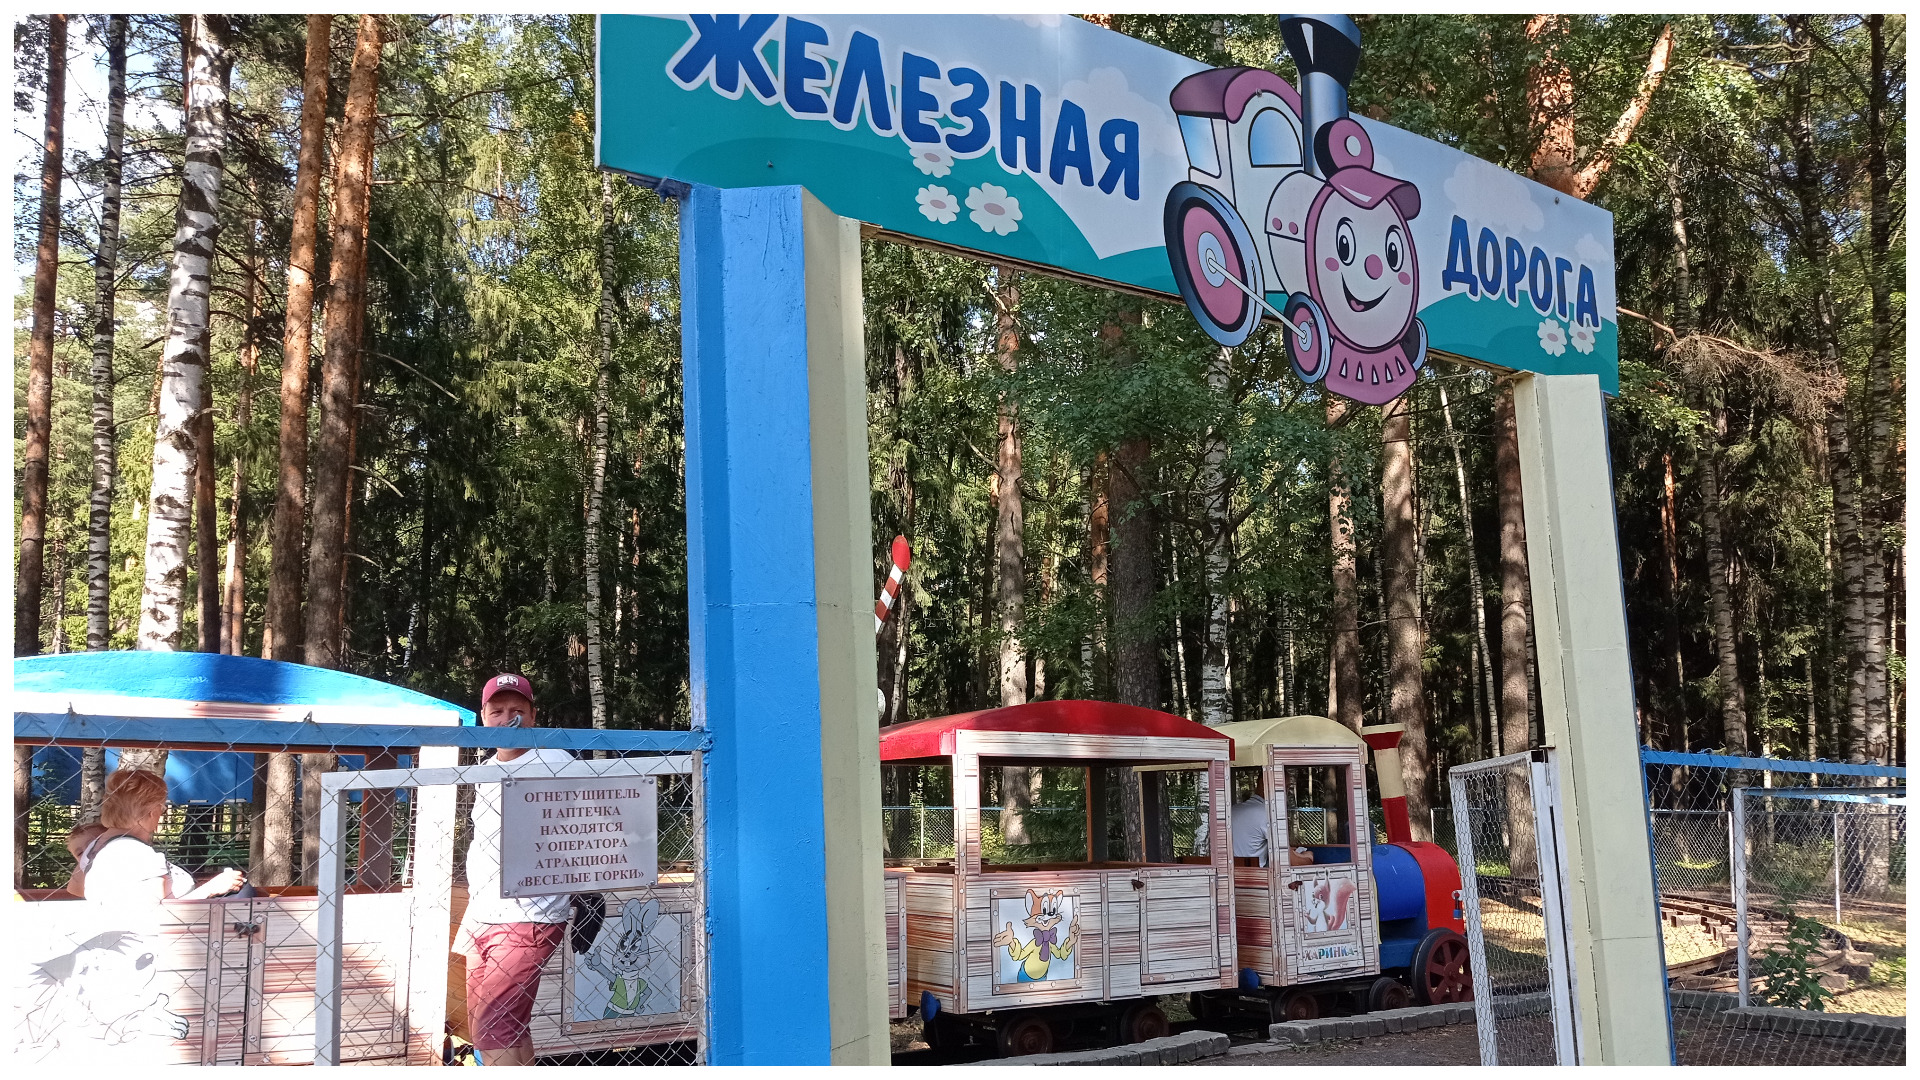 Аттракцион "Железная дорога" для детей, посетителей парка, также располагается в зоне отдыха.